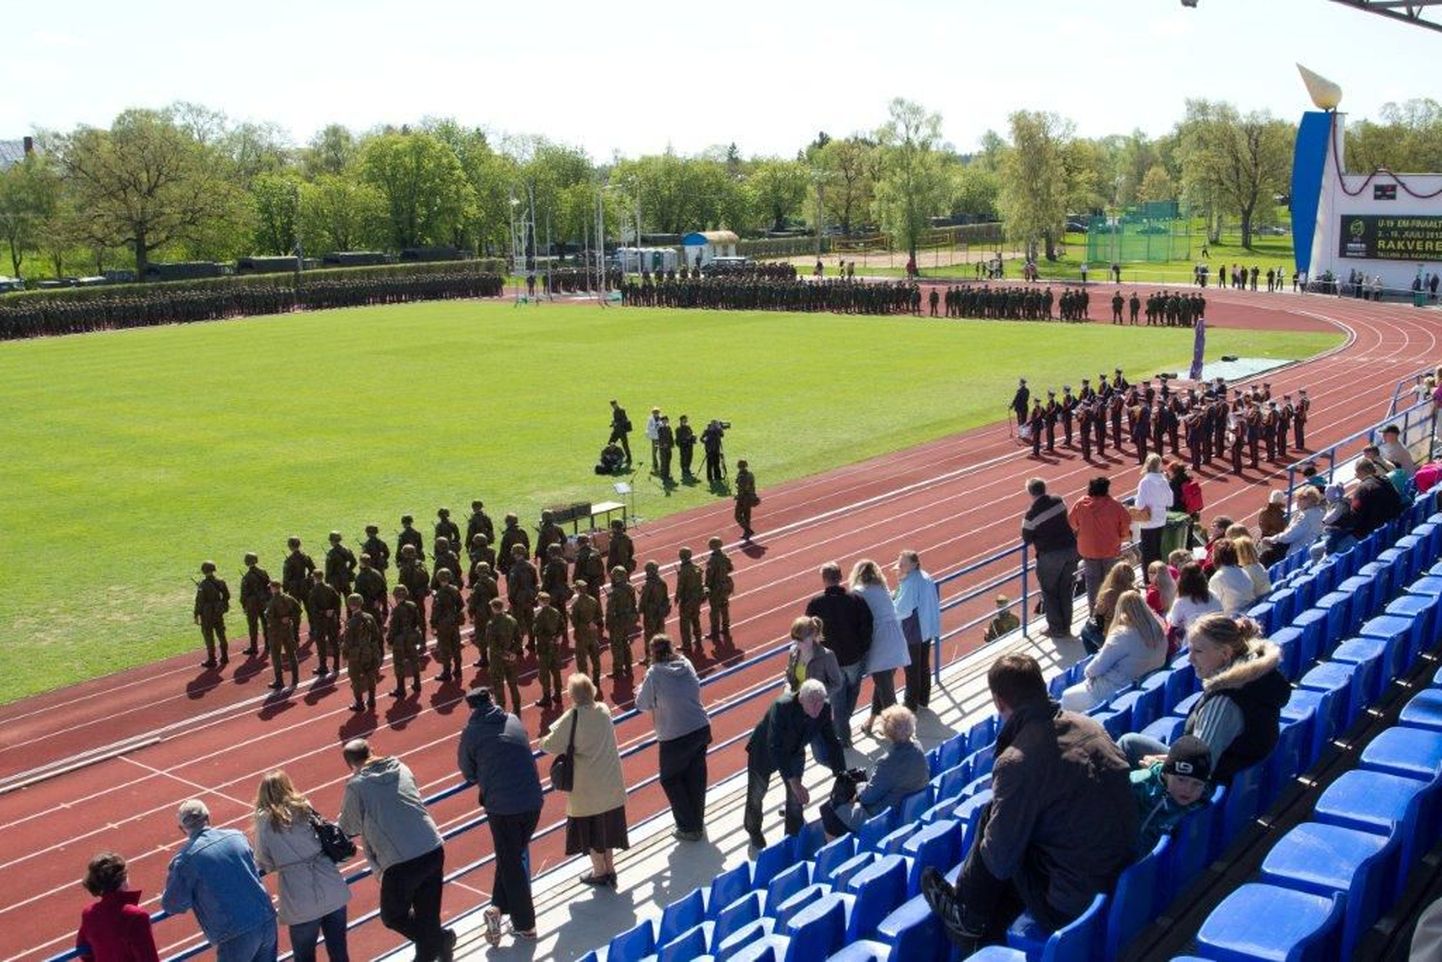 Kaitseväe suurõppus Kevadtorm 2012 lõppes laupäeval piduliku rivistusega Rakvere staadionil.